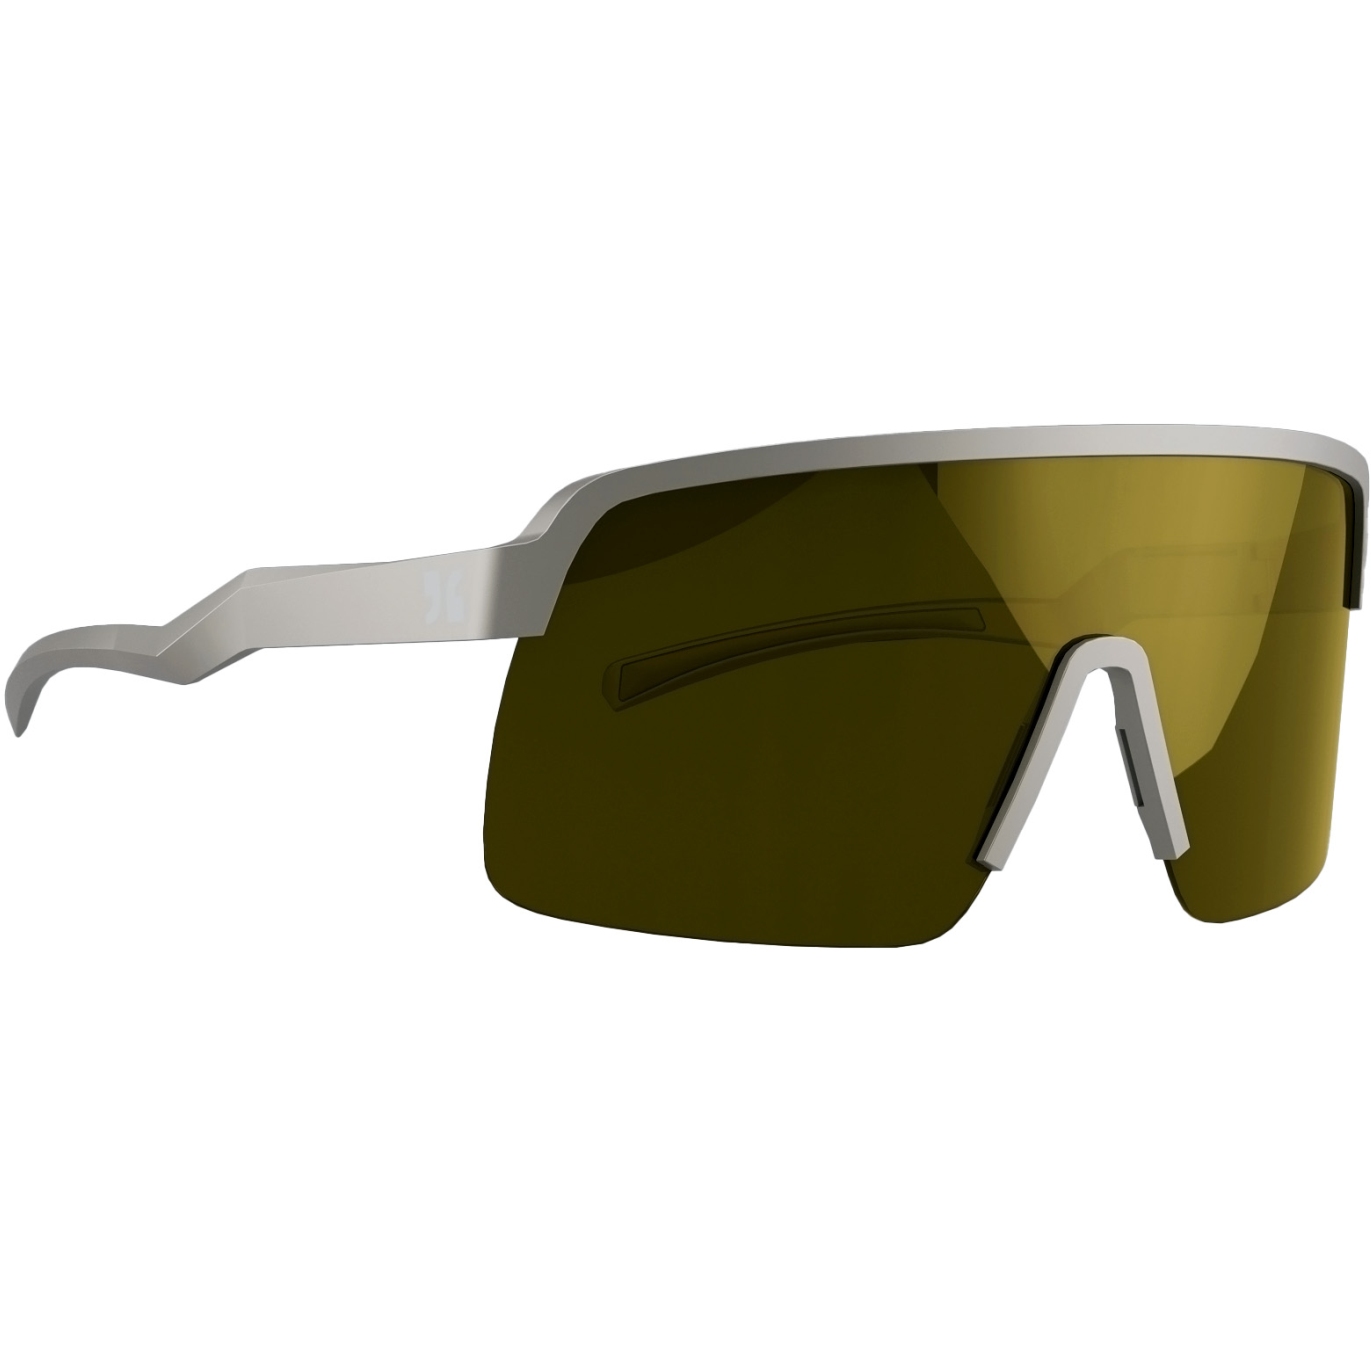 Produktbild von Dirtlej Specs 03 Bike Sonnenbrille - Gold - grau/gold